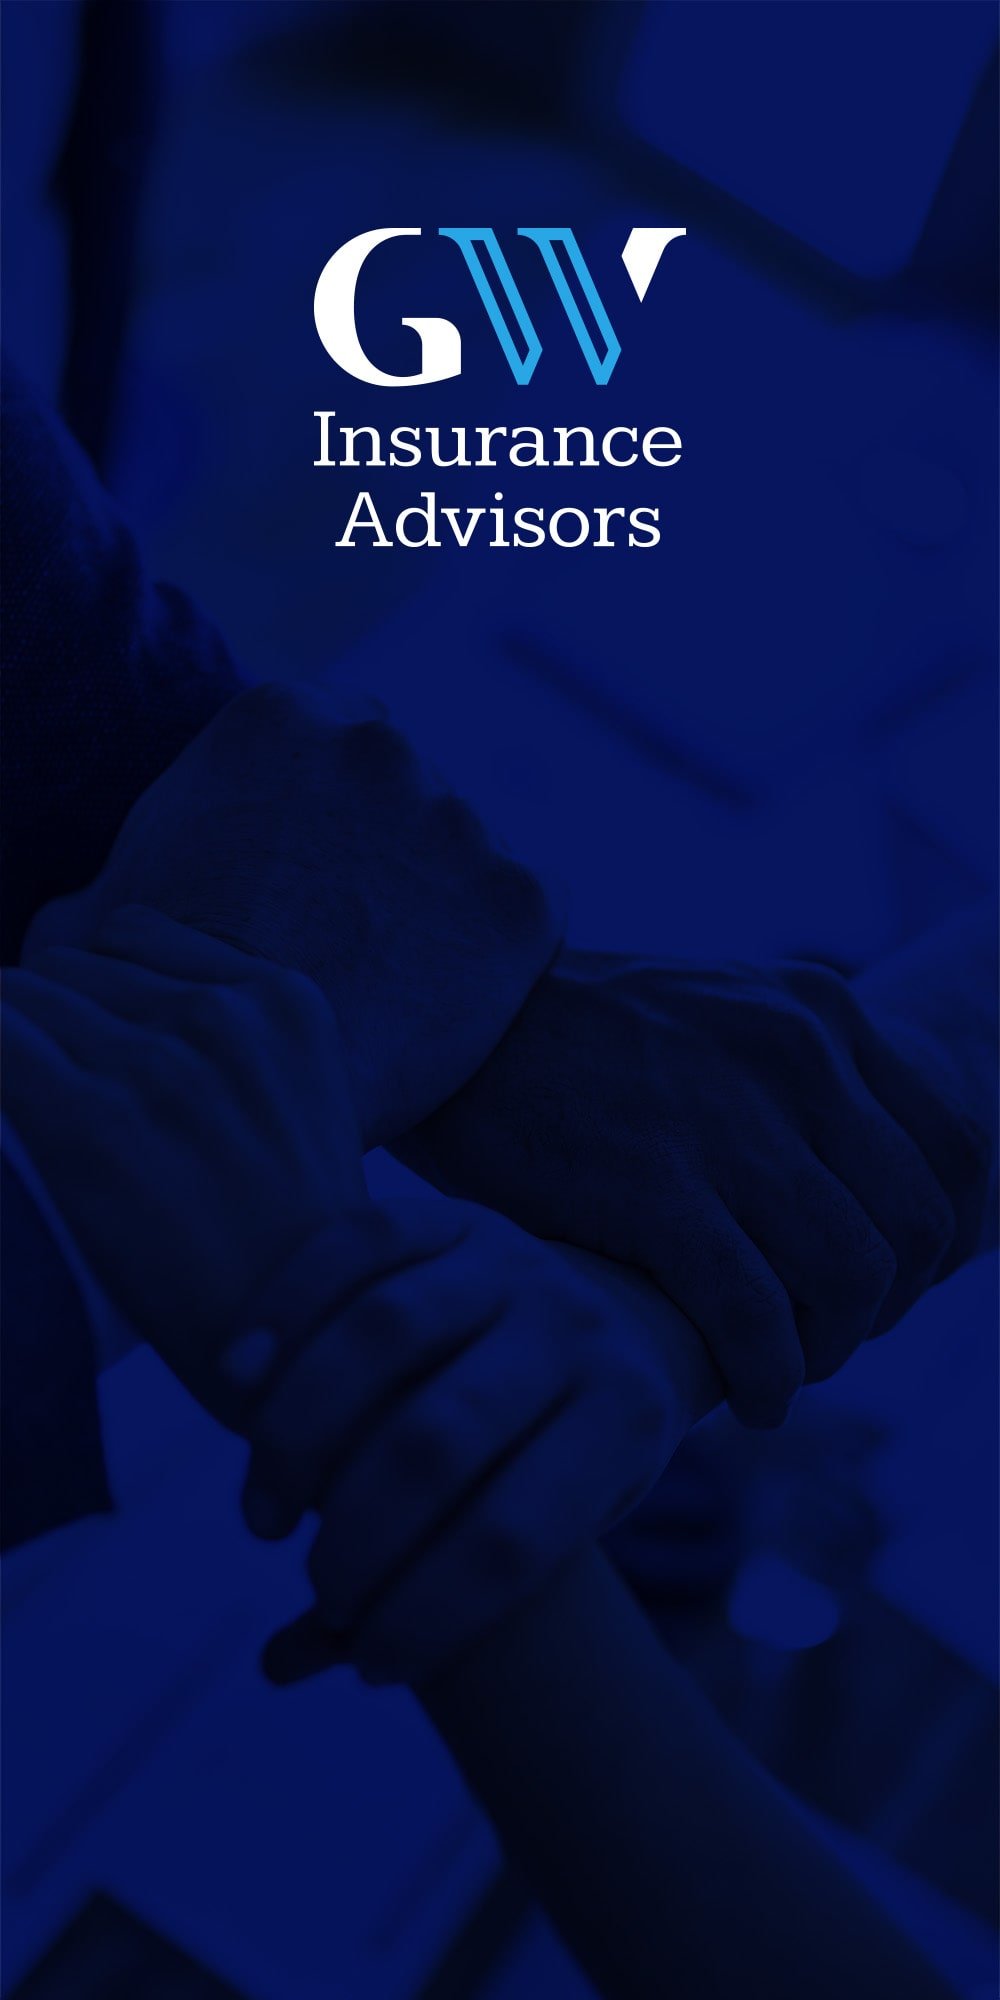 GW Insurance advisors